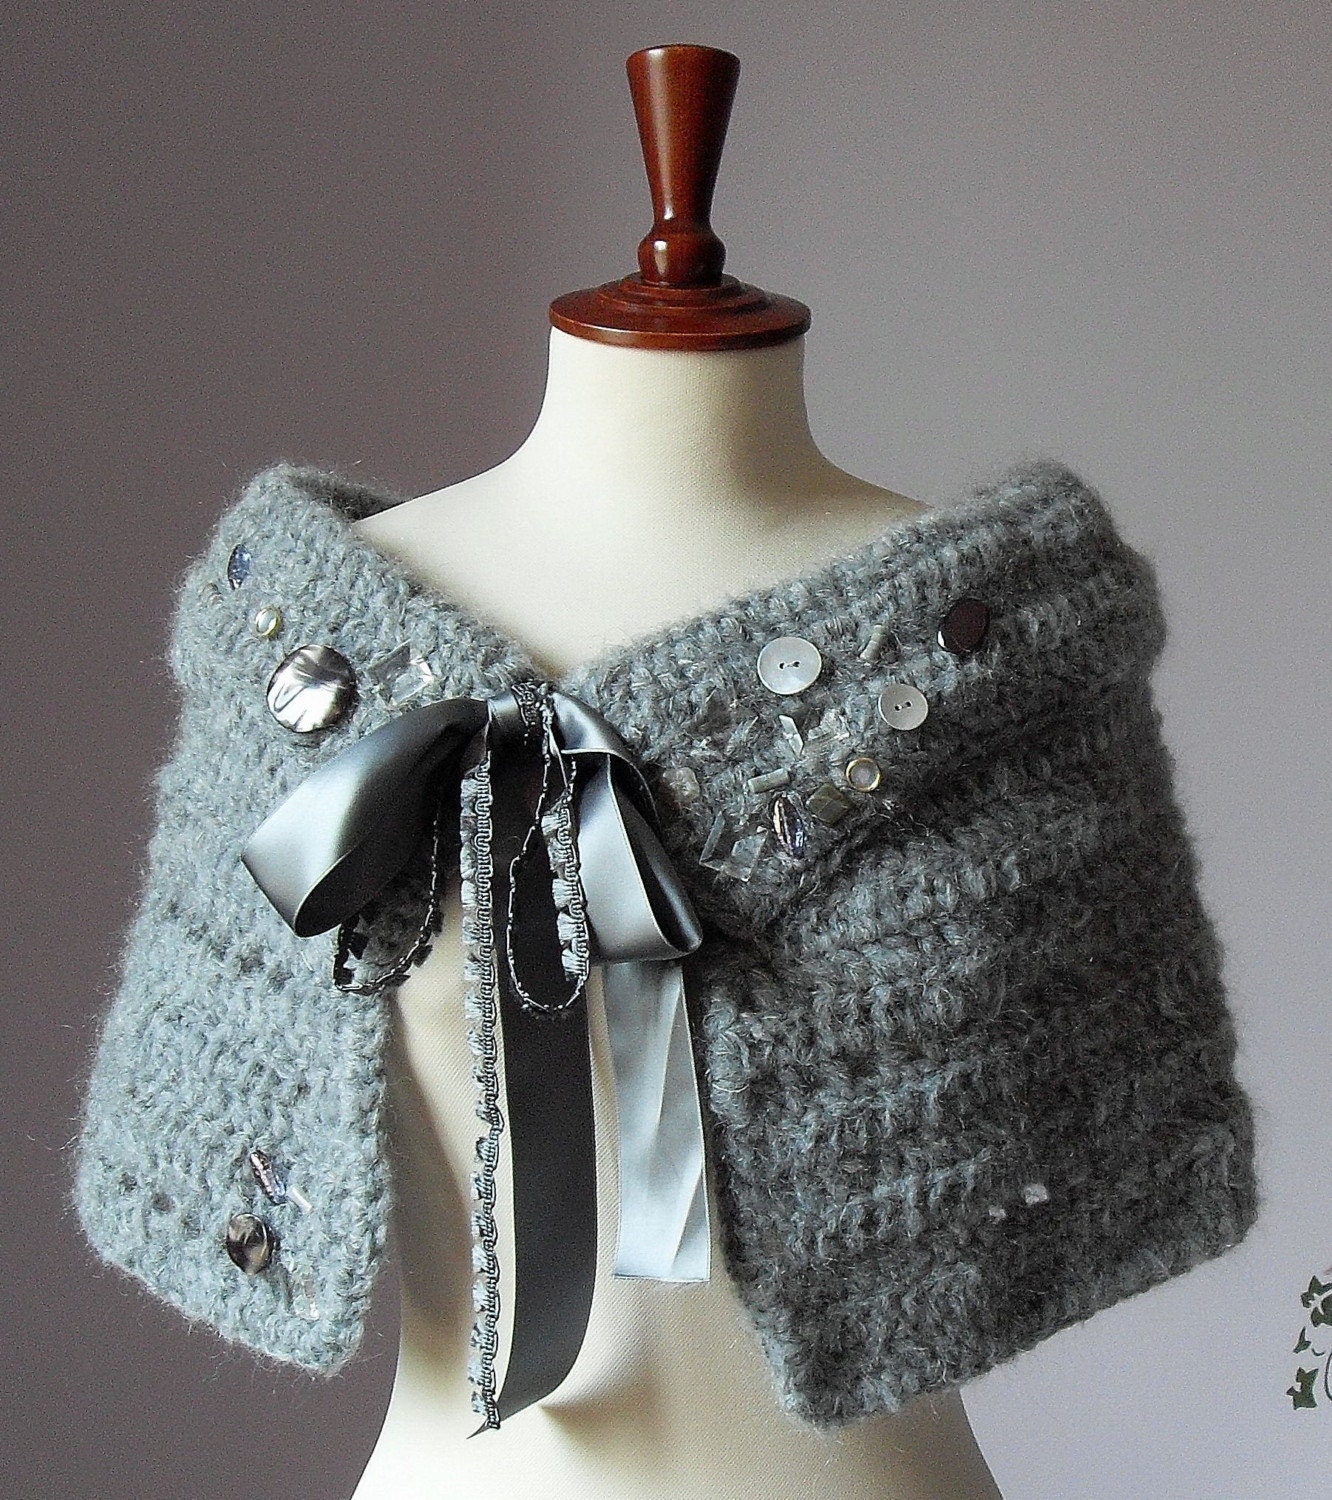 Yarn Market - Free Tahki-Stacy Charles Poppy Capelet knitting pattern.